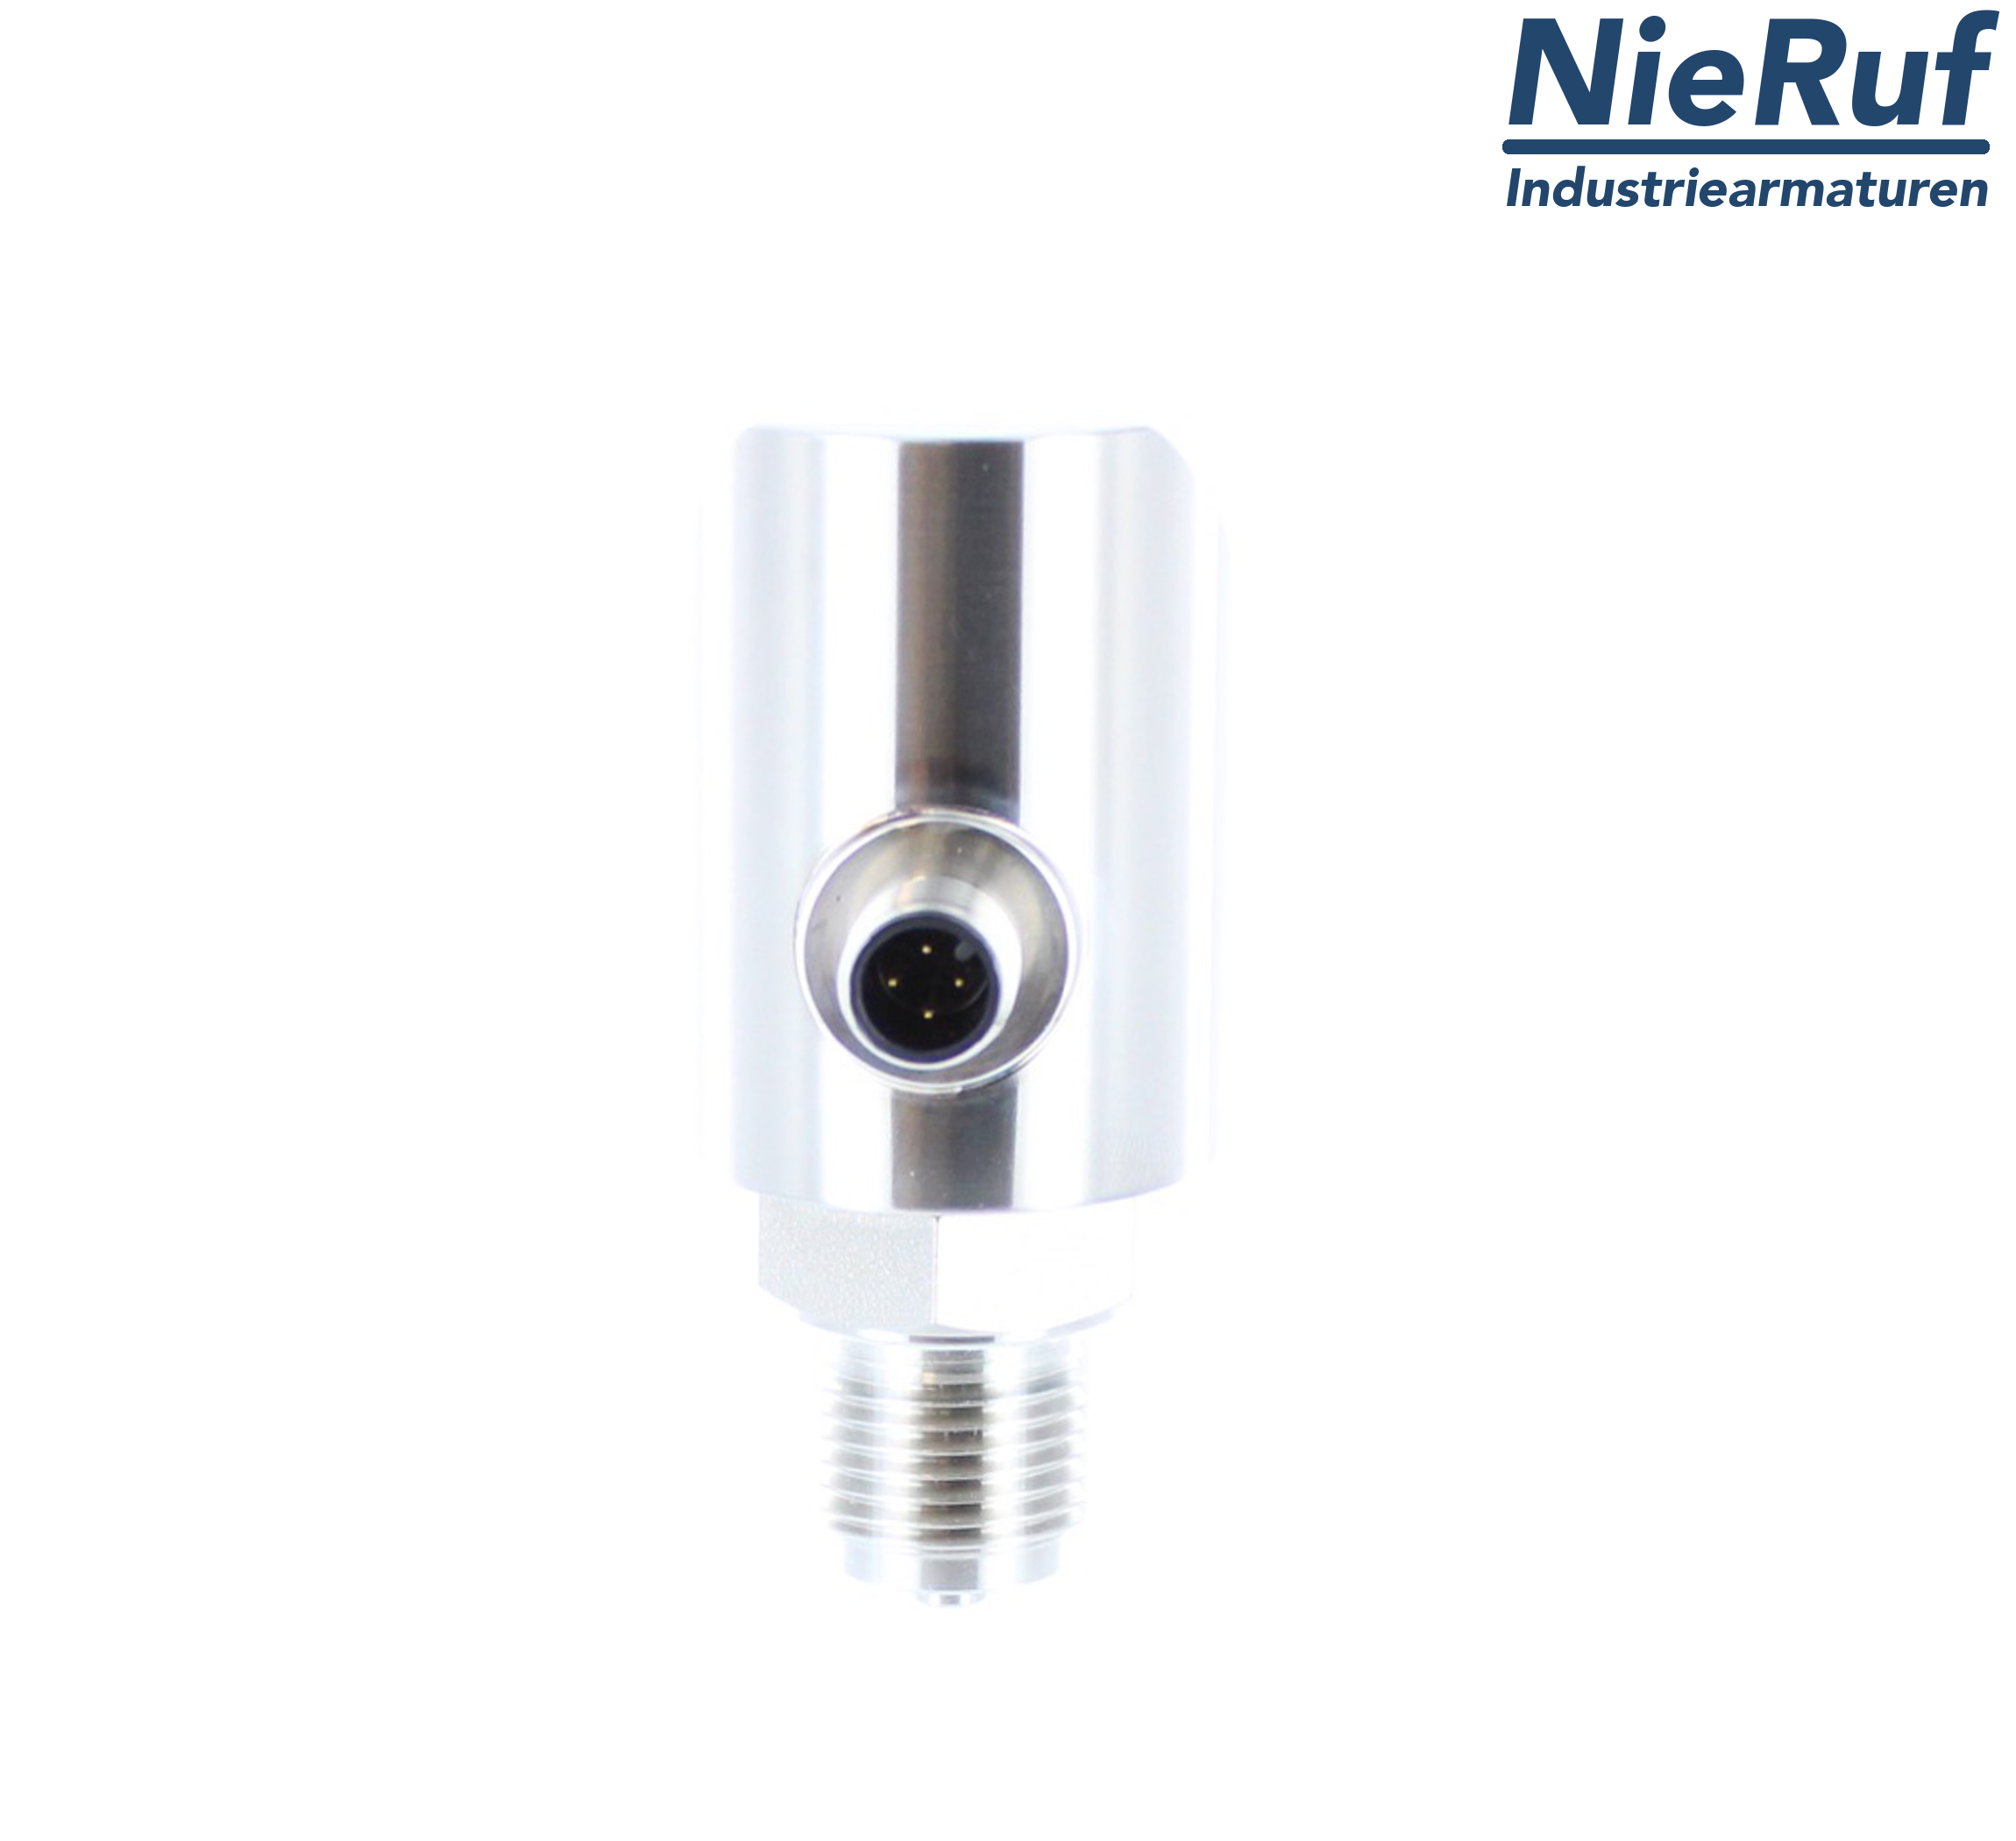 digital pressure sensor G 1/2" B 4-wire: 1xPNP, 1x4 - 20mA FPM 0,0 - 60,0 bar